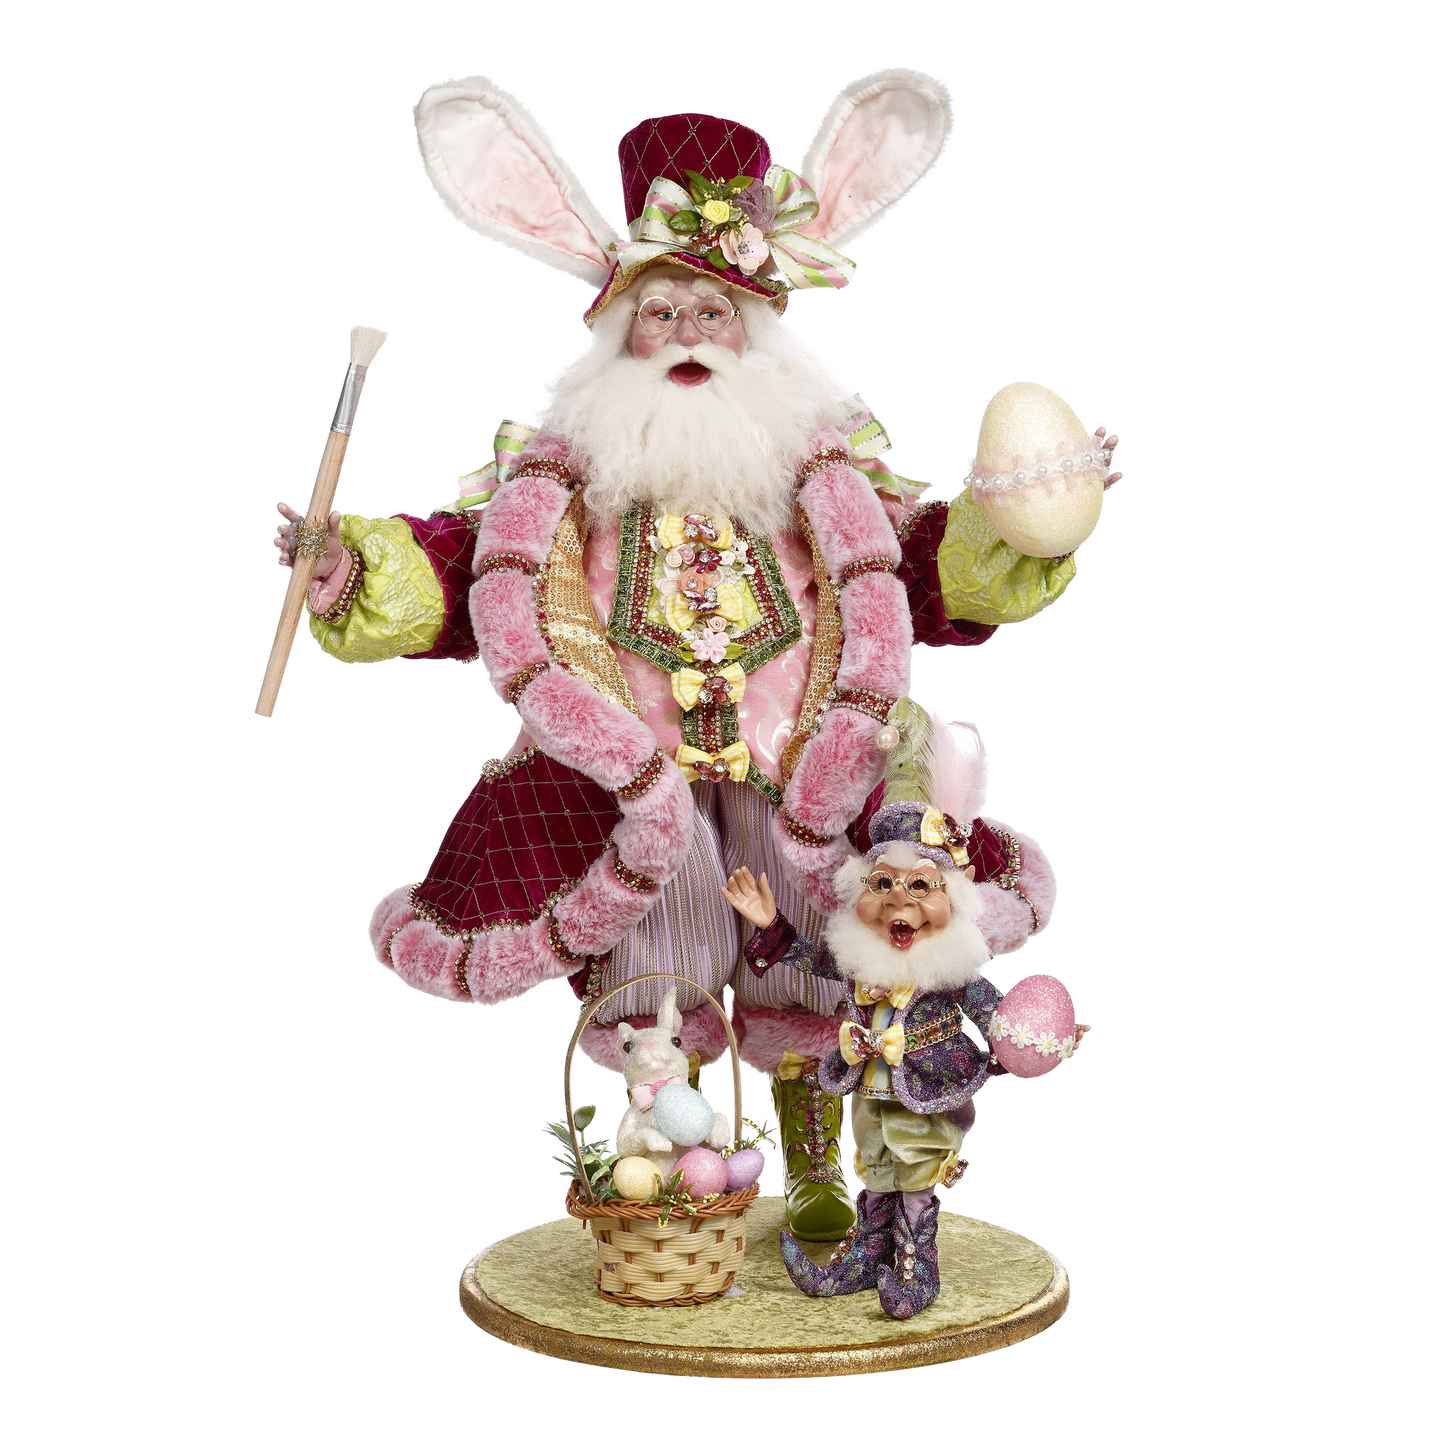 Mark Roberts Easter - Kerstman met elf in paasoutfit - Pasen - decoratiebeeld - groen paars roze - 66cm - Collector's item